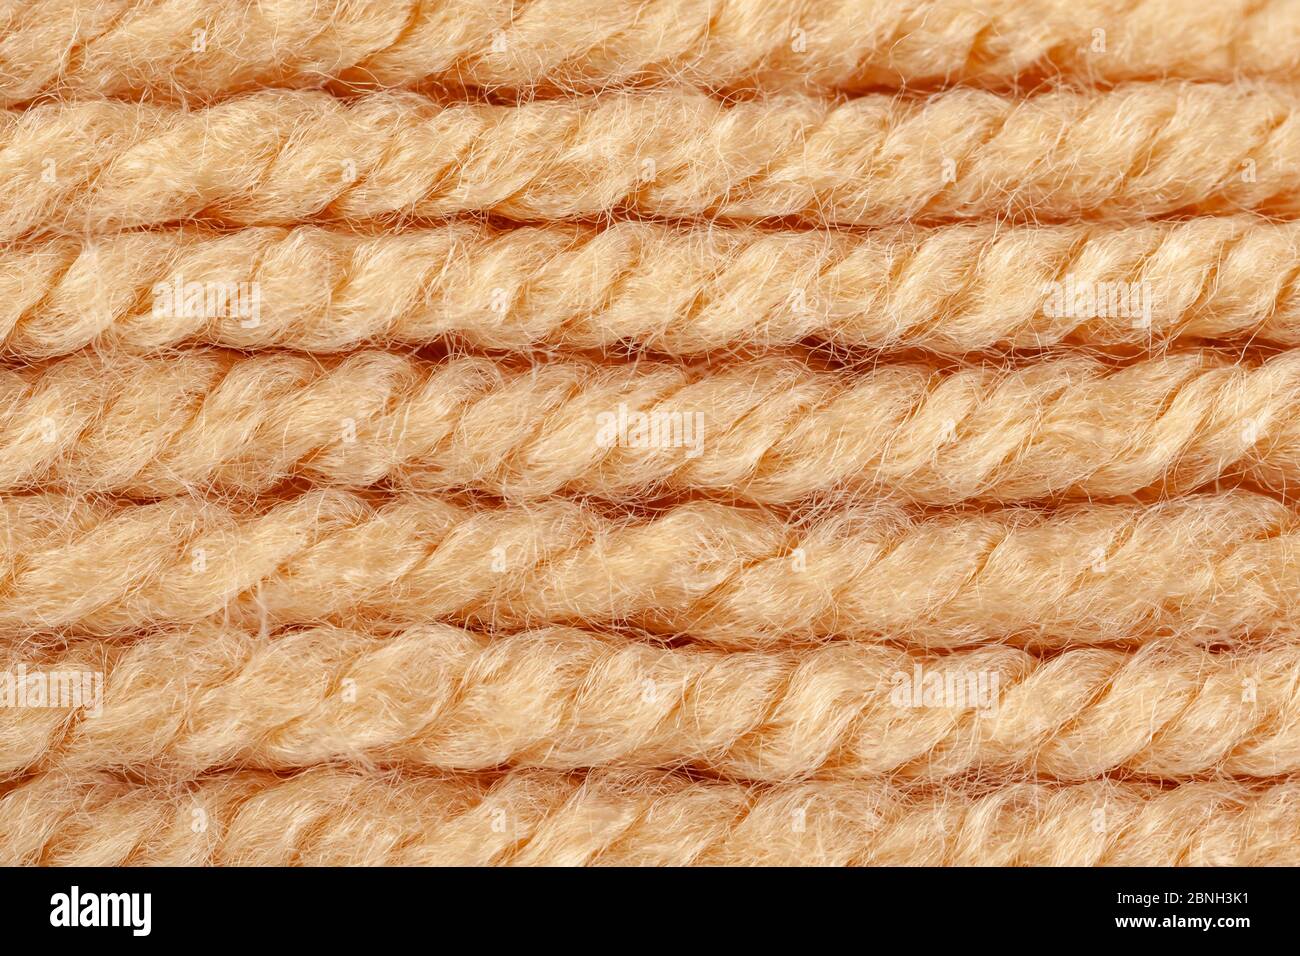 Texture Of Thick Woolen Thread In Skein Threads Texture Stock Photo